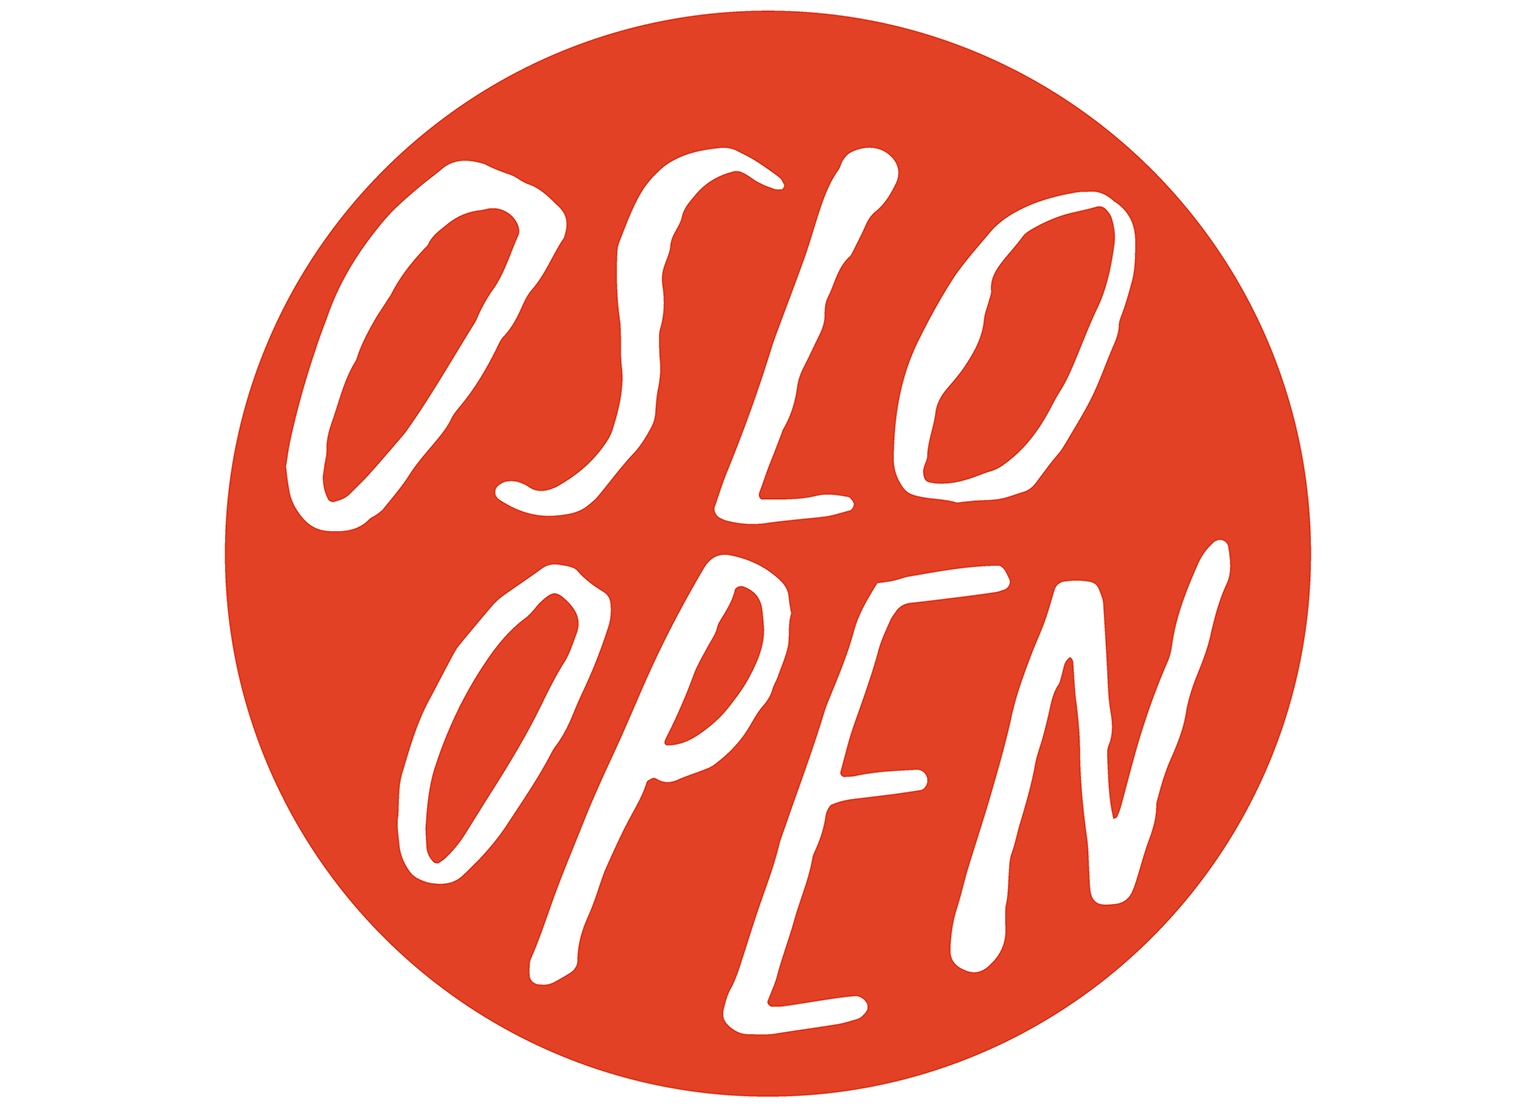 Oslo Open - invitasjon til ope atelier